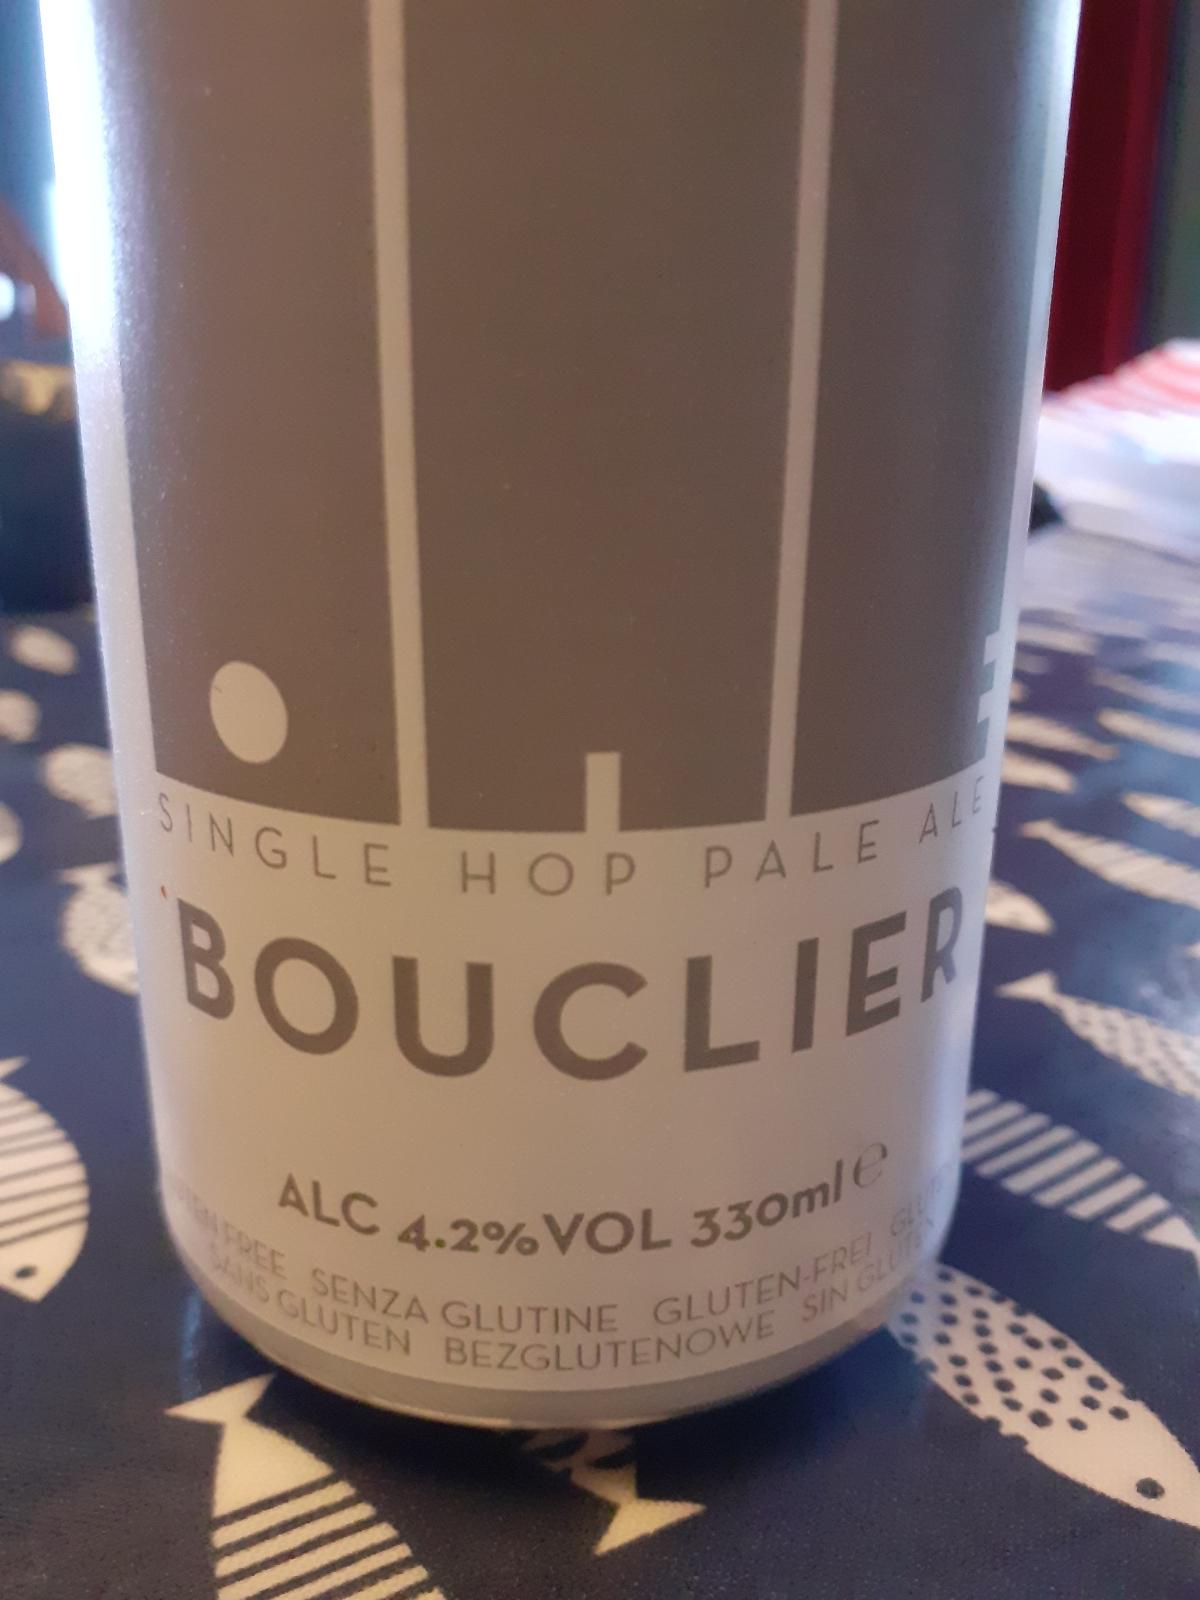 Bouclier Single Hop Pale Ale